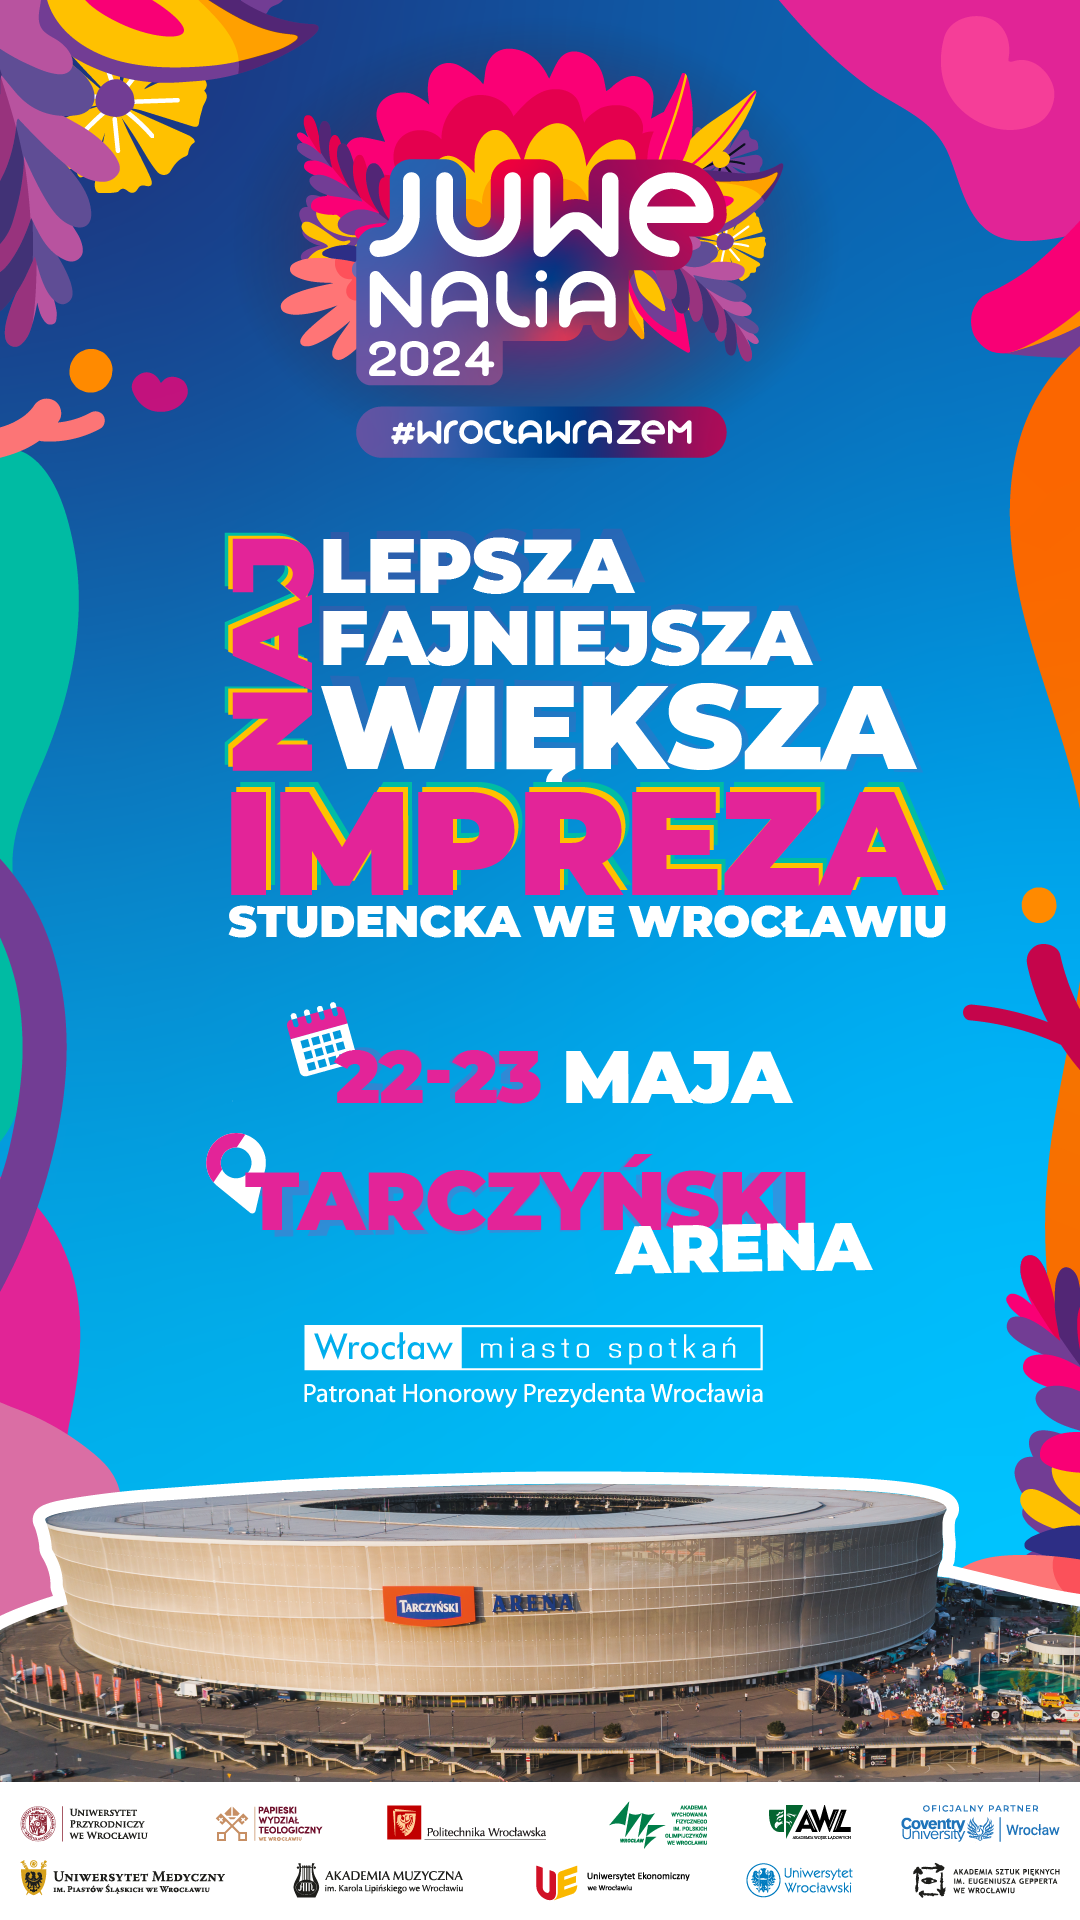 Juwenalia 2024 #WrocławRazem